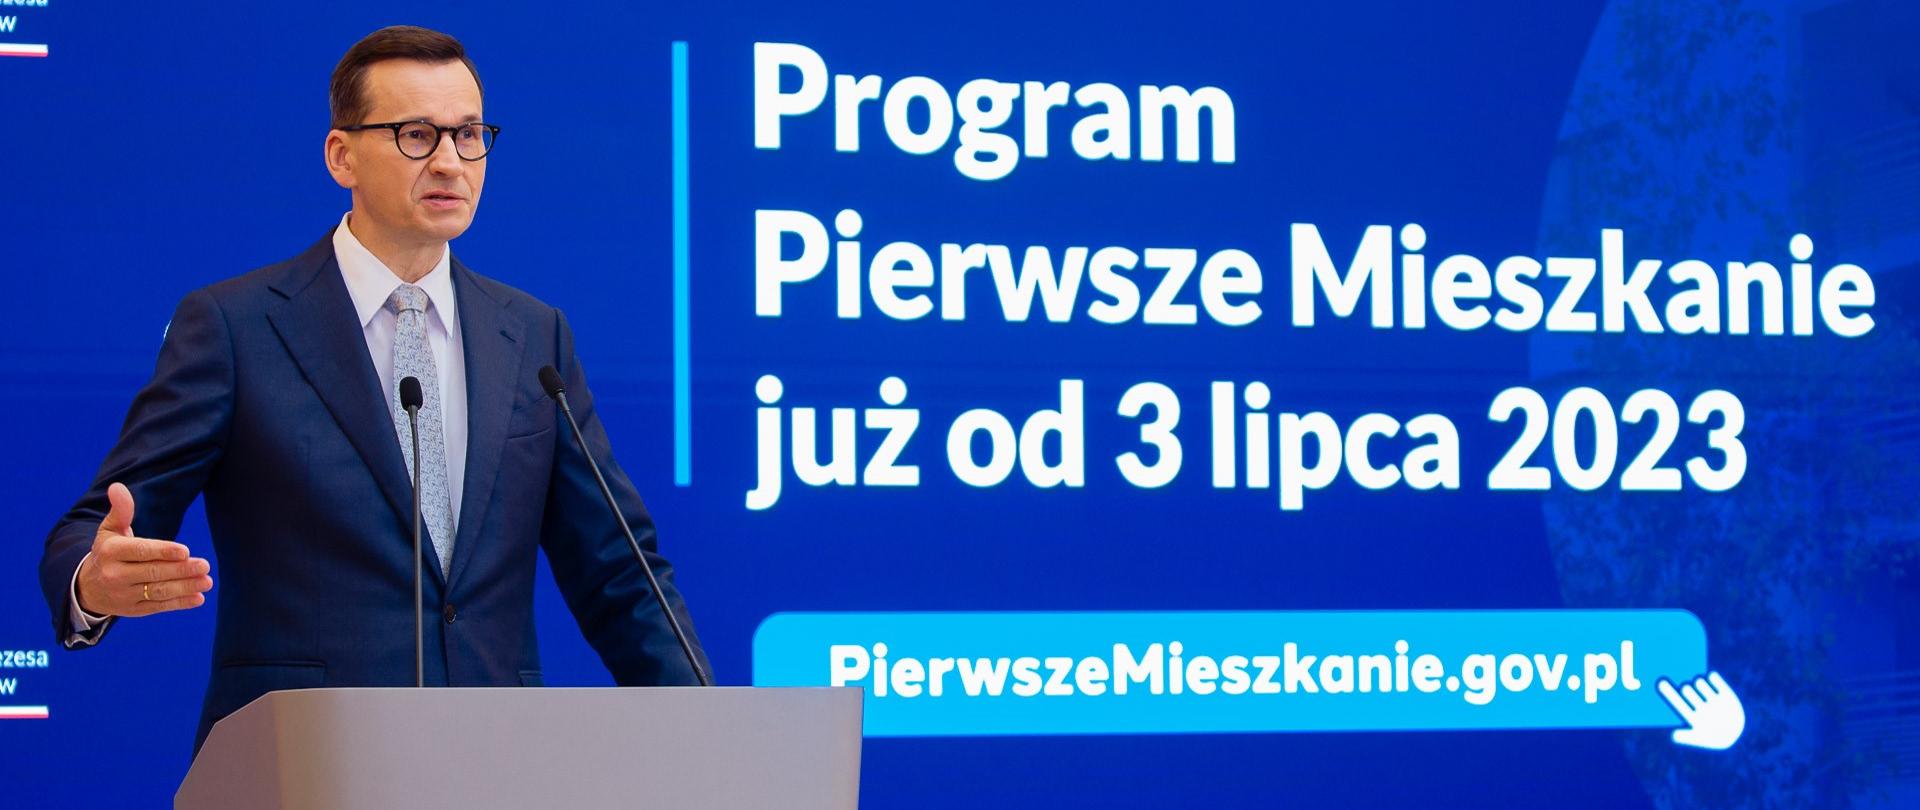 Premier Mateusz Morawiecki przemawia podczas konferencji prasowej dotyczącej programu "Pierwsze Mieszkanie".